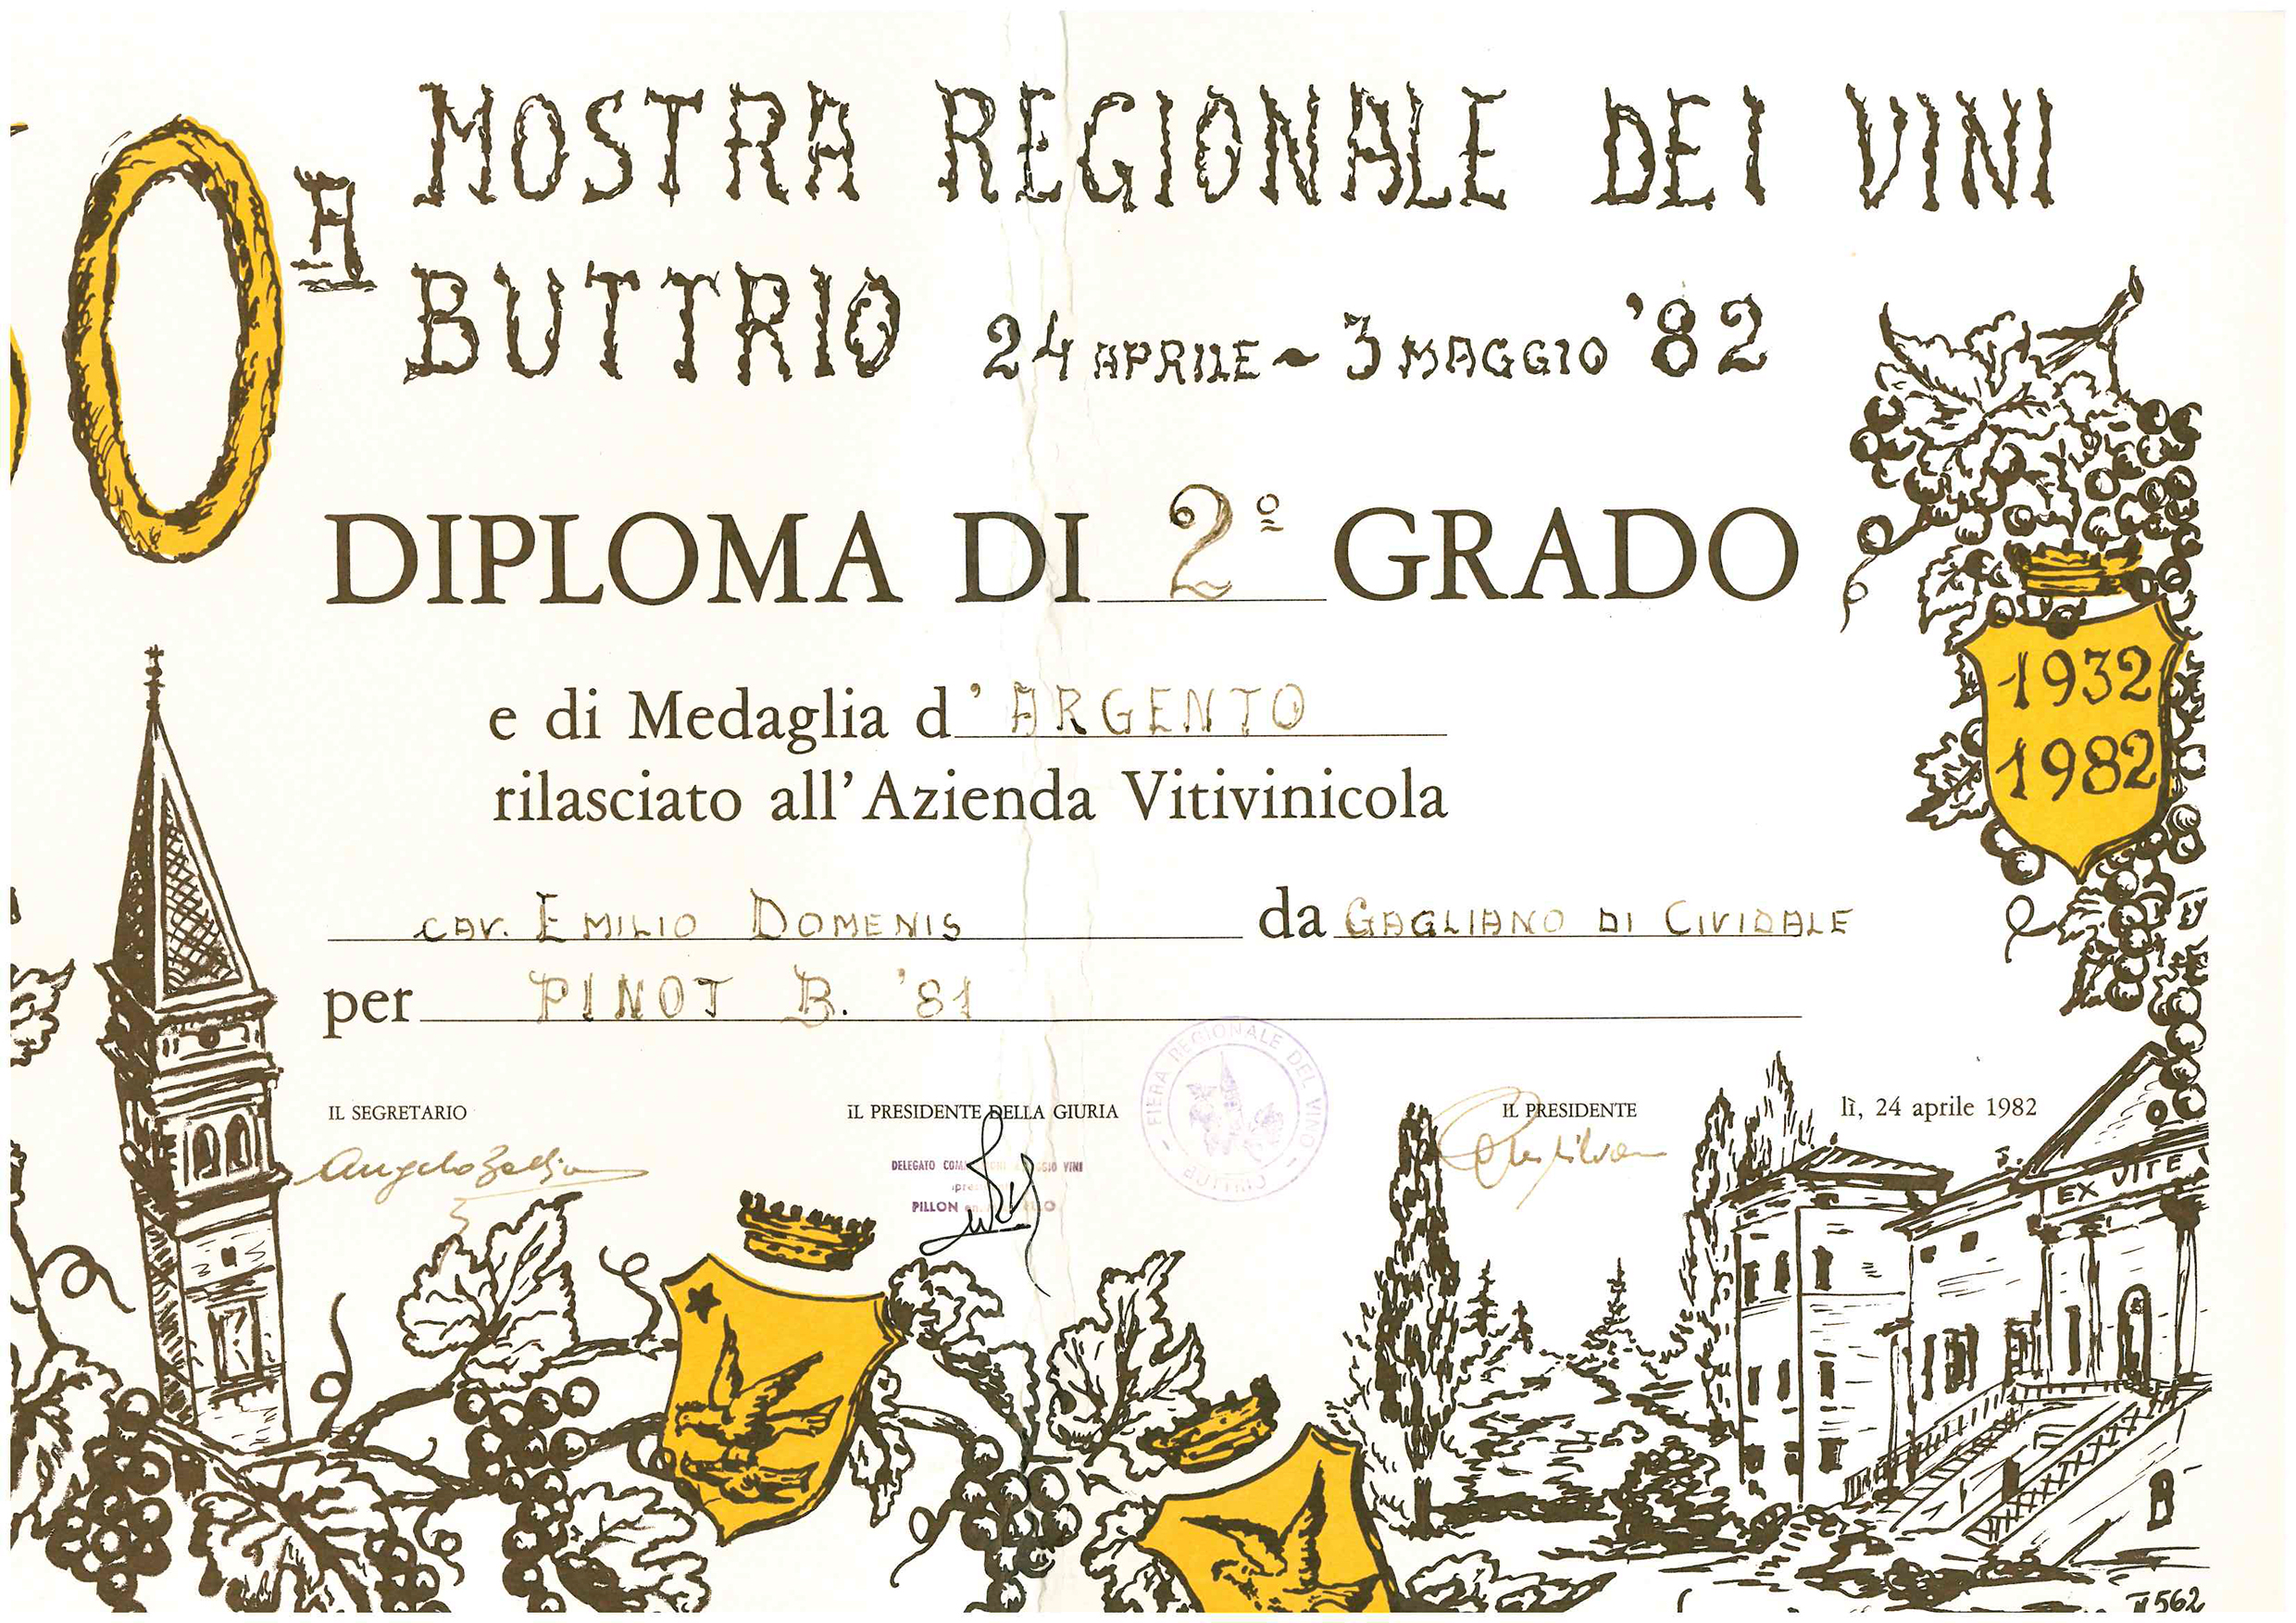 Mostra Regionale dei Vini Buttrio 1982 – Pinot Bianco ’81